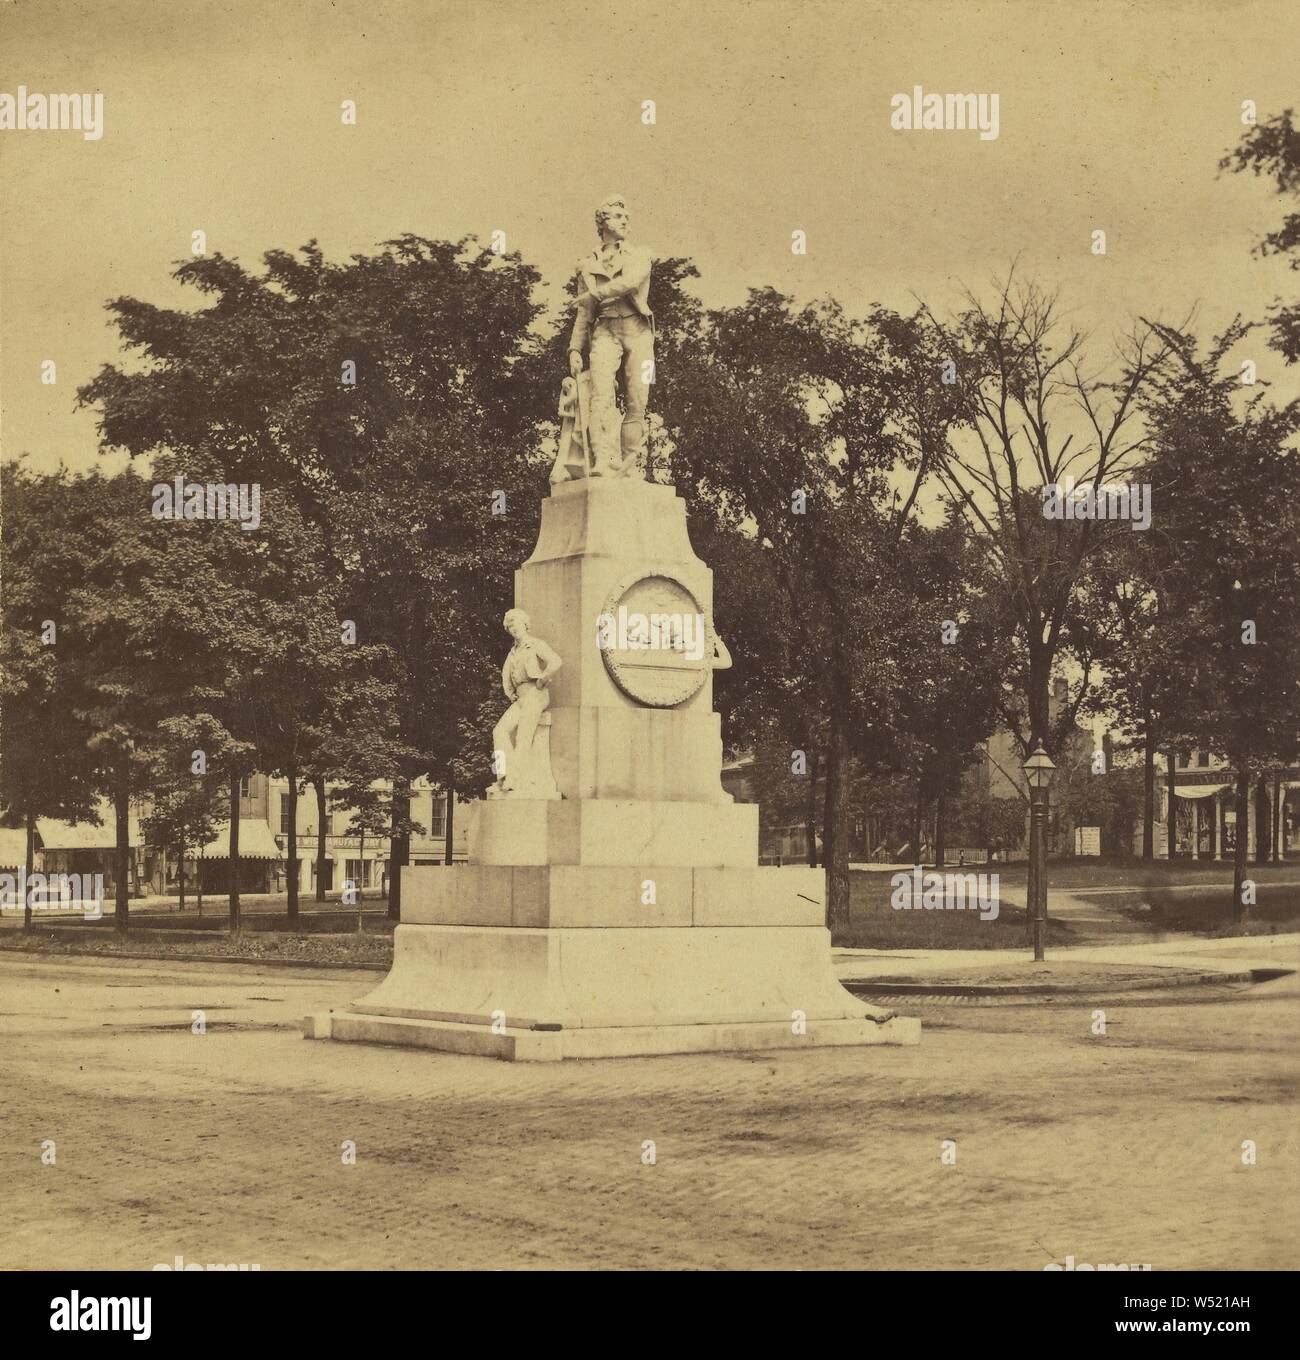 Le Commodore Perry's Monument. Cleveland, Ohio, Edward et Henry T. Anthony & Cie (American, 1862 - 1902), à propos de 1869, à l'albumine argentique Banque D'Images